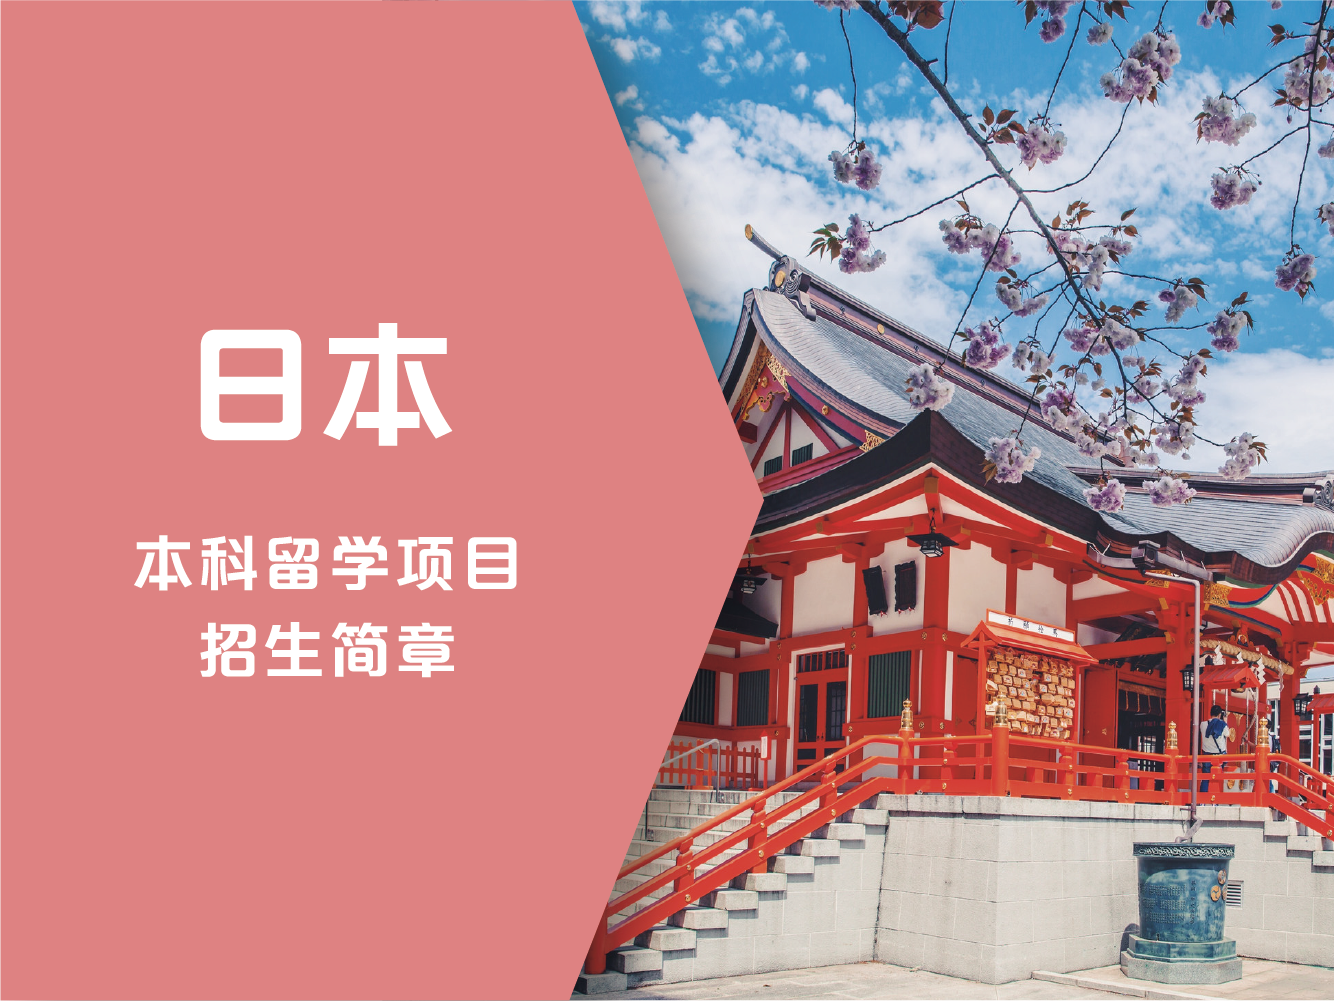 纽业国际教育日本本科留学项目招生简章图片